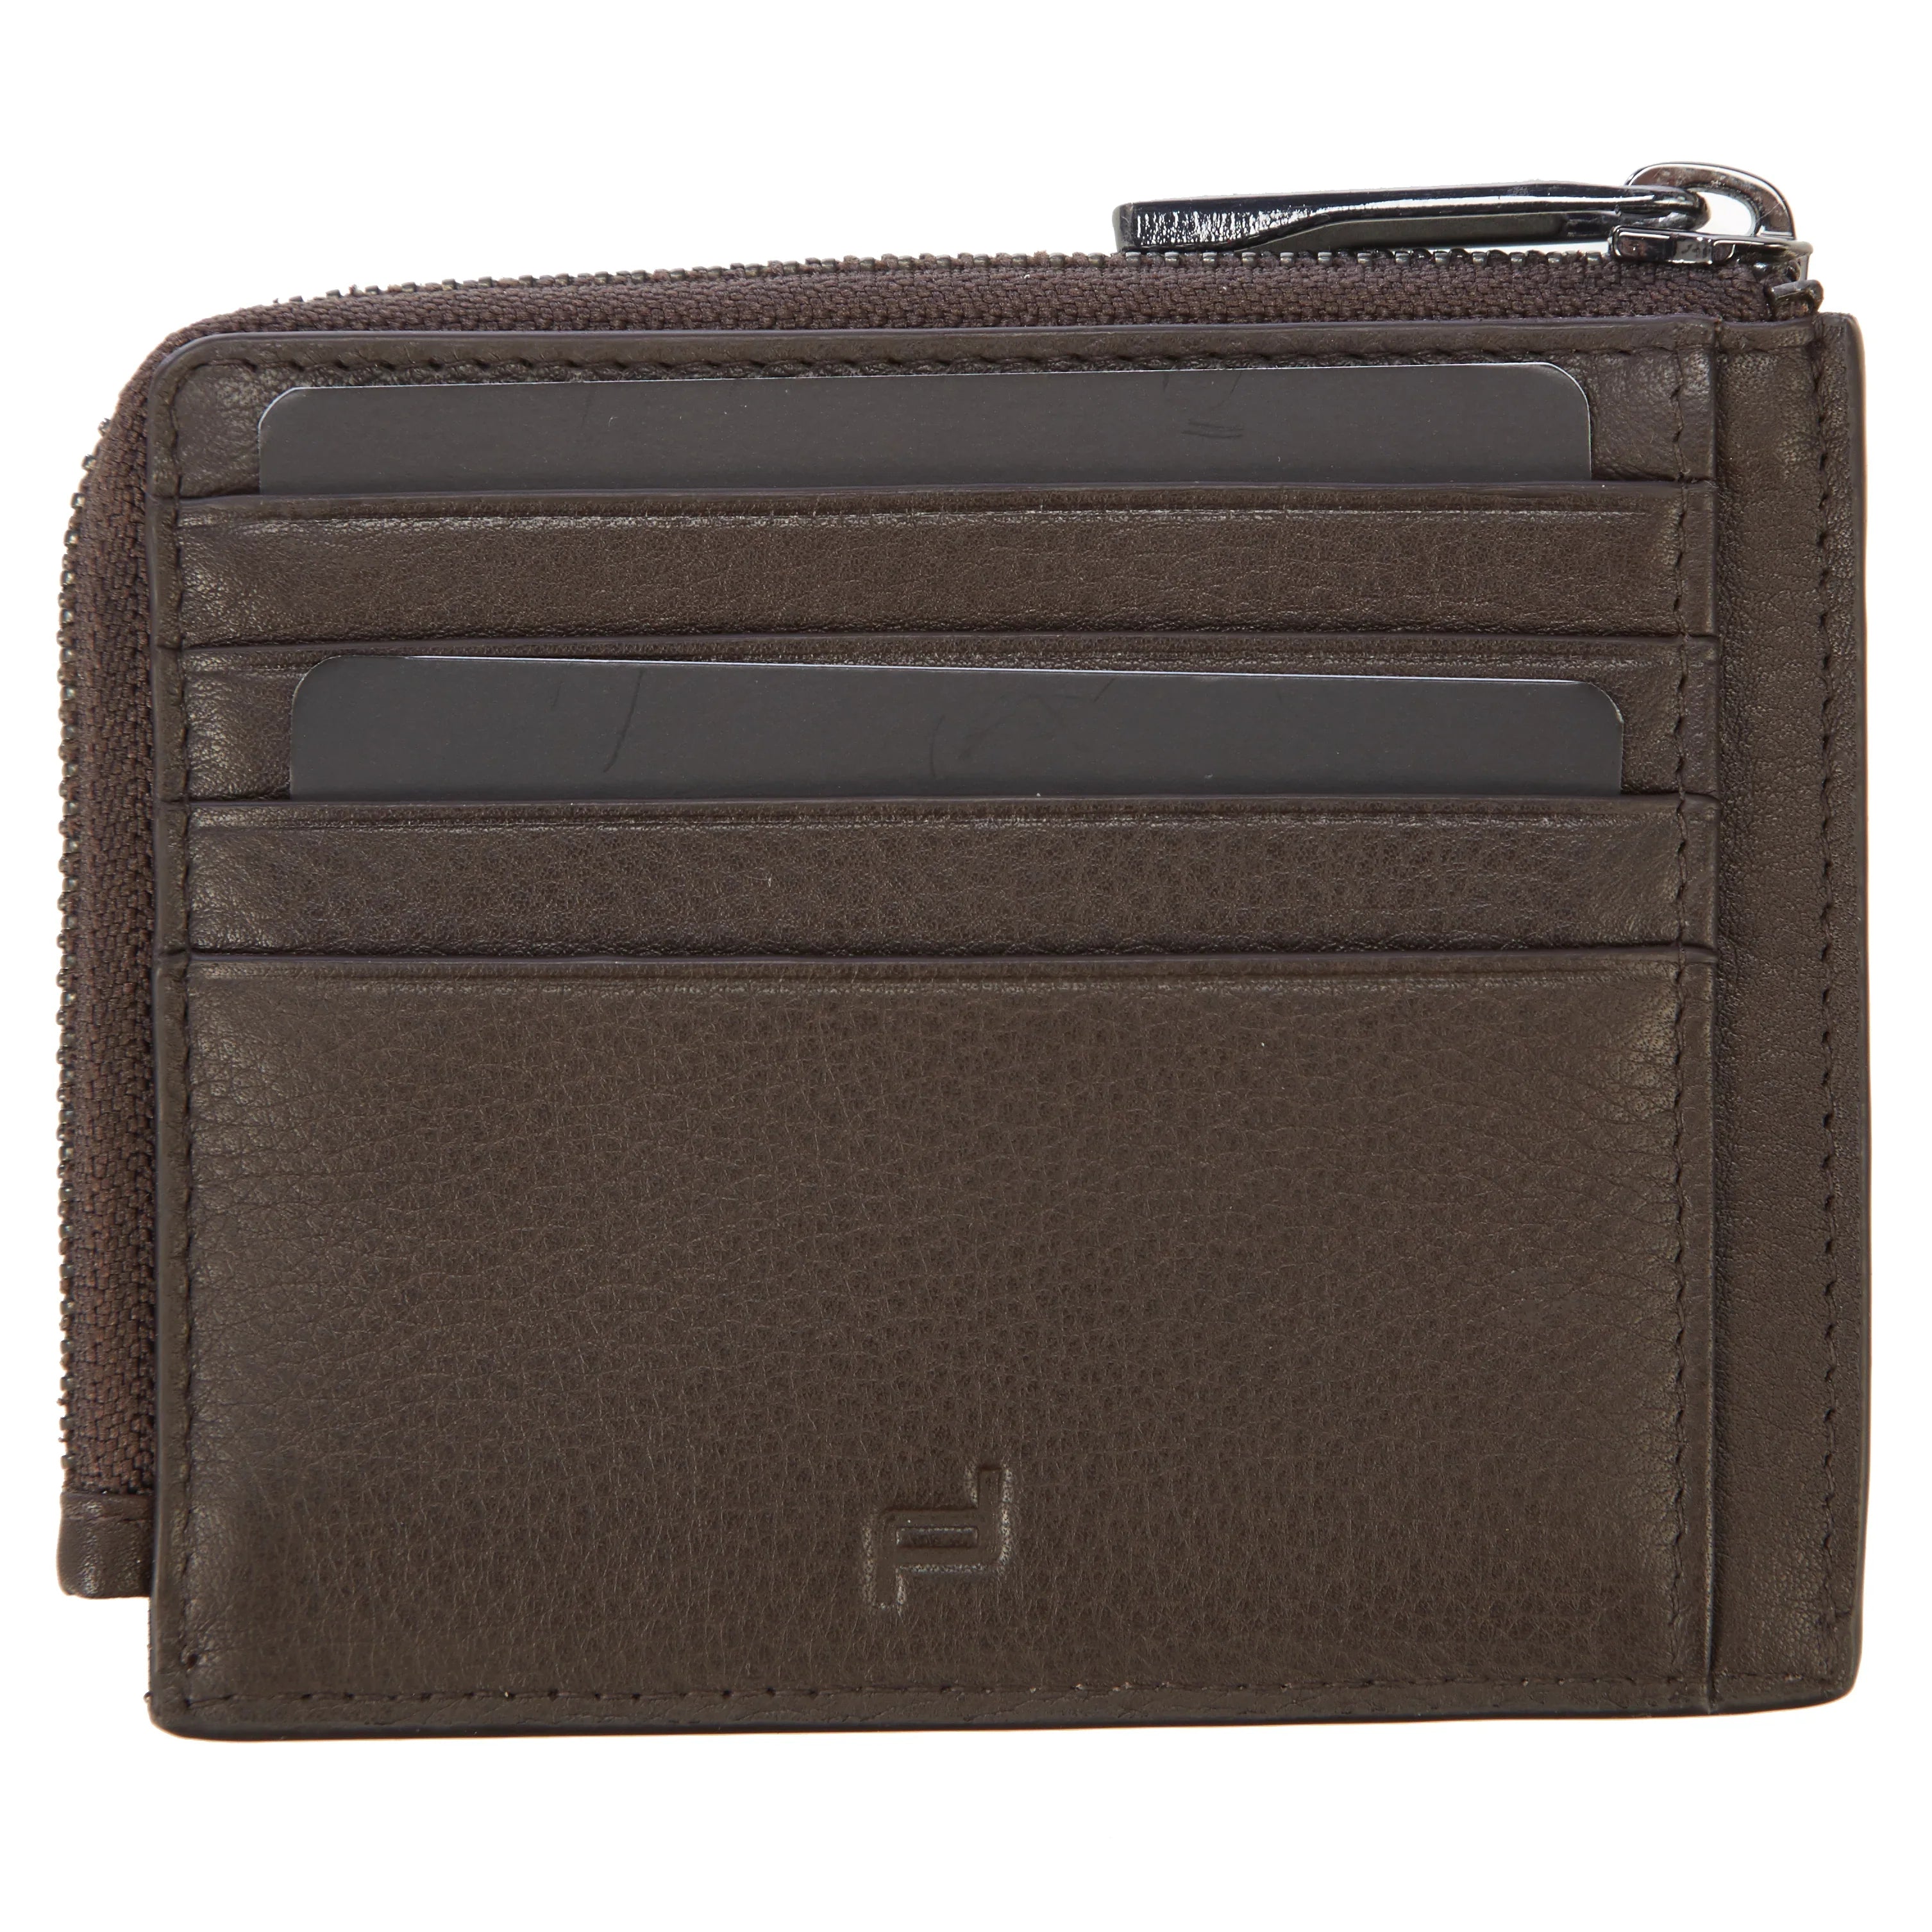 Porsche Design Accessories Business Wallet 11 Zipper RFID 12 cm - Dark Brown